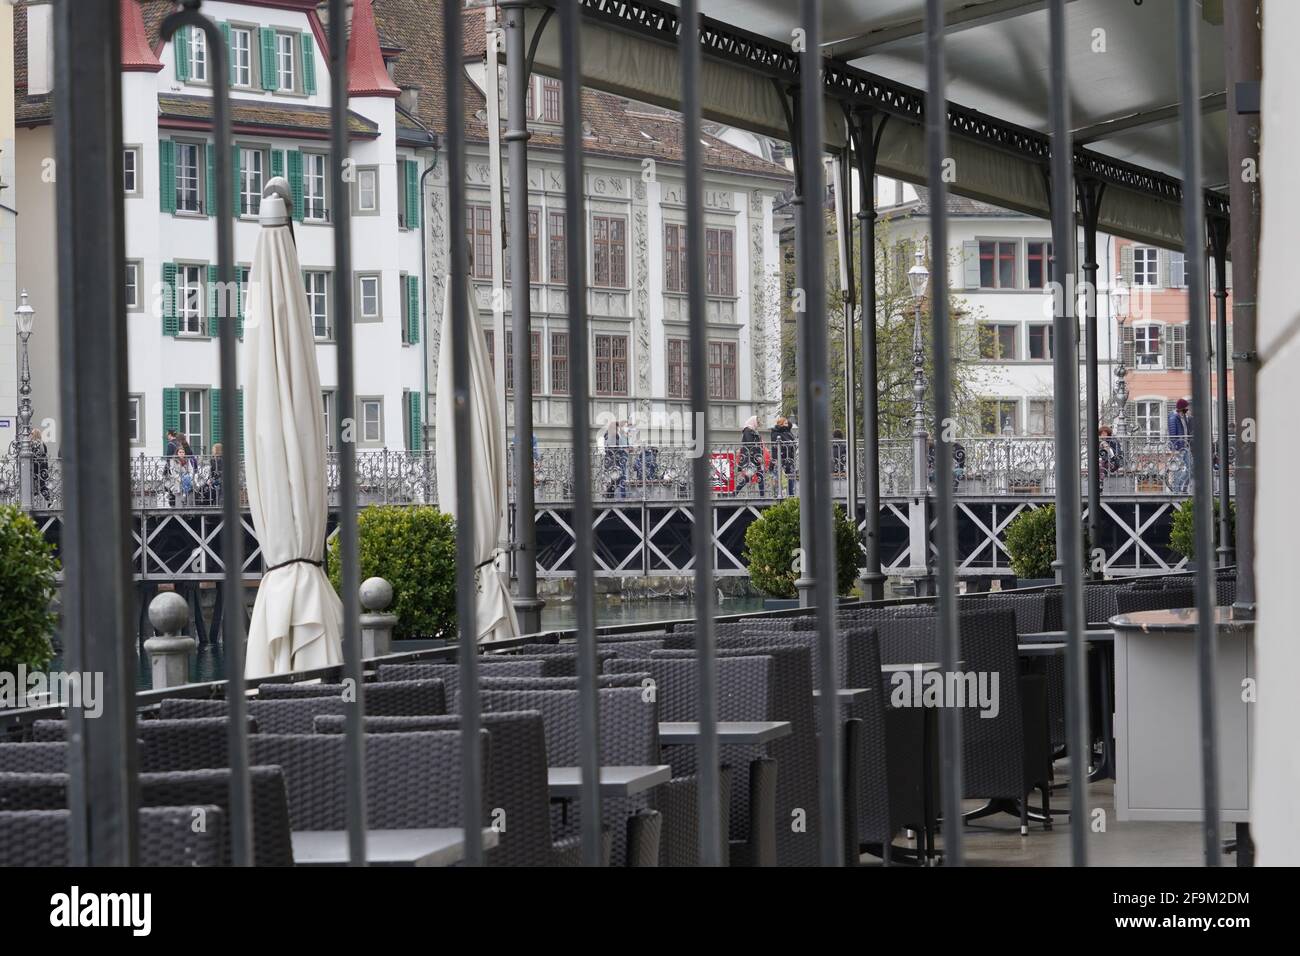 Geschlossenes Restaurant in der Stadt Luzern, Schweiz aufgrund von Coronavirus- und Civid-19-Maßnahmen. Die Leute gehen vorbei oder kaufen sich Essen zum Mitnehmen, um es woanders zu essen. Stockfoto